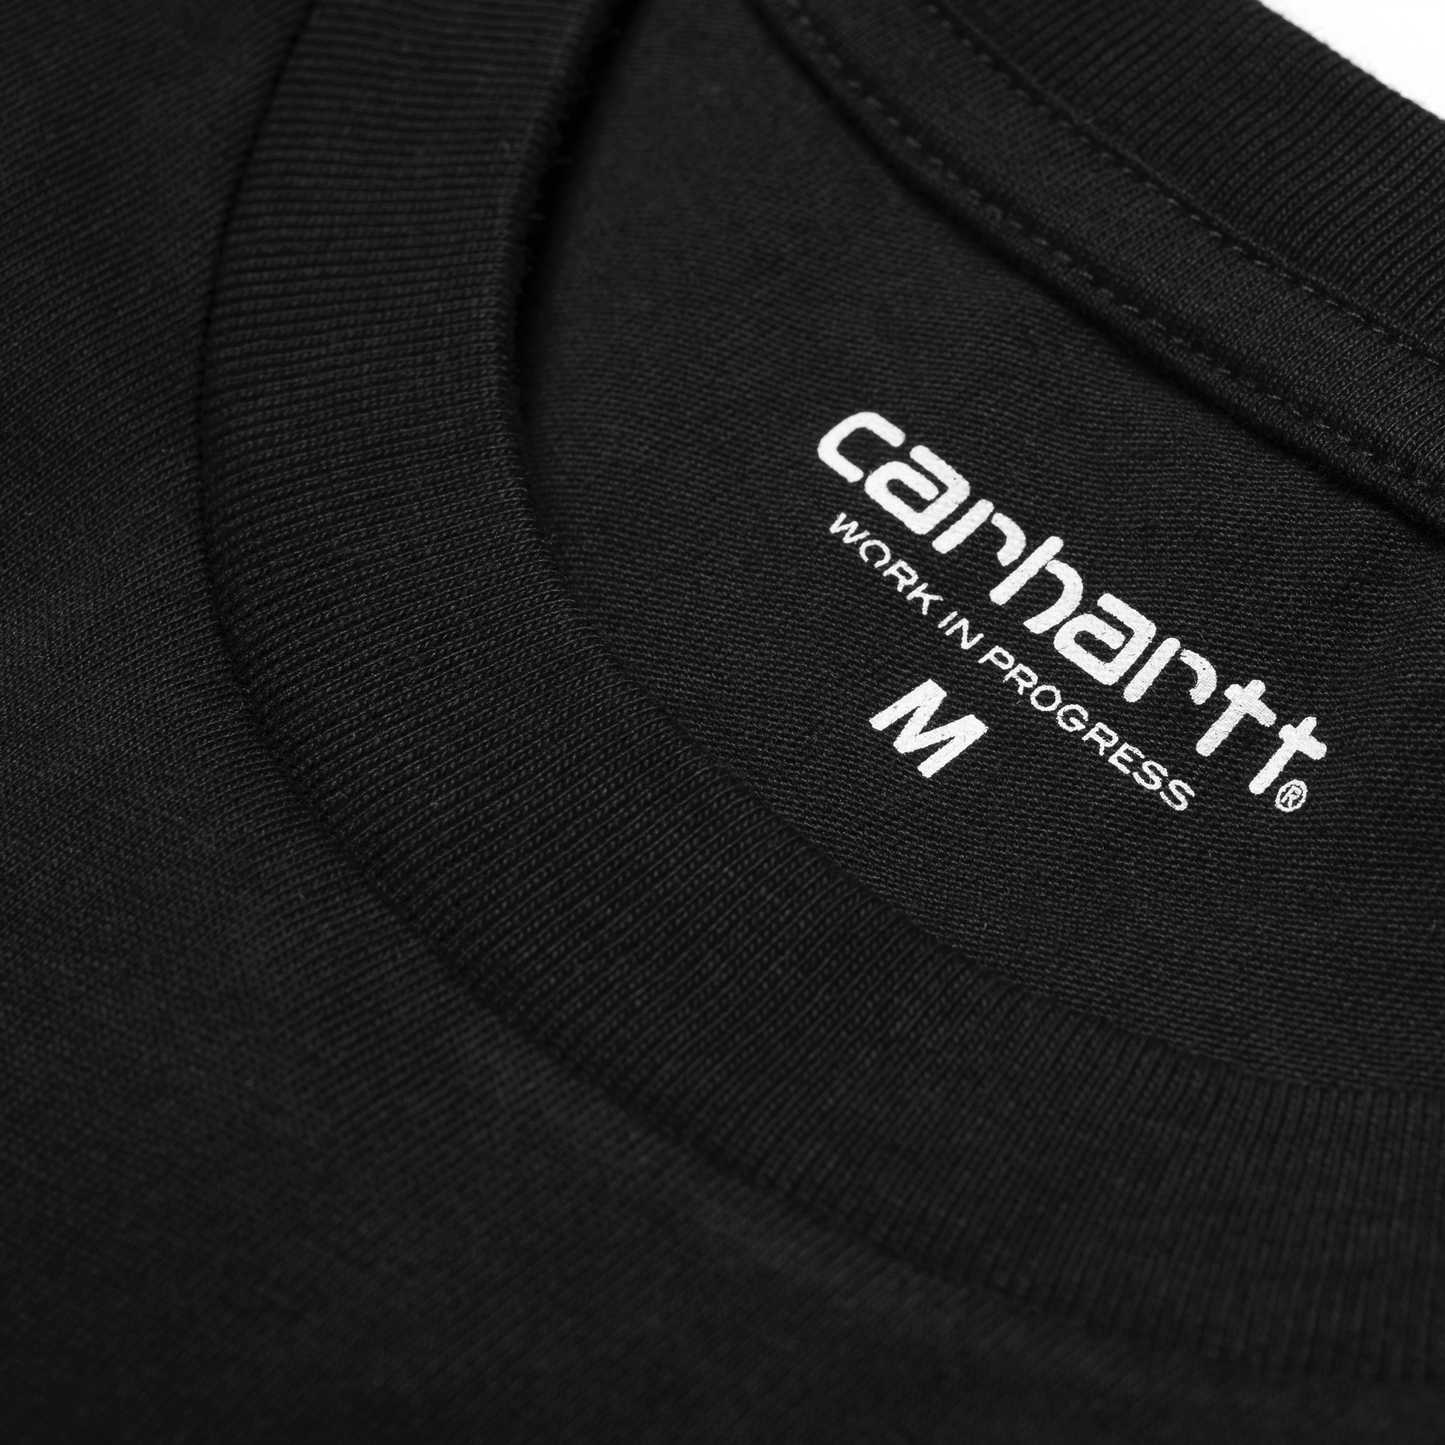 Carhartt WIP Script T-Shirt em preto com print em branco. Foto de detalhe do print interior.